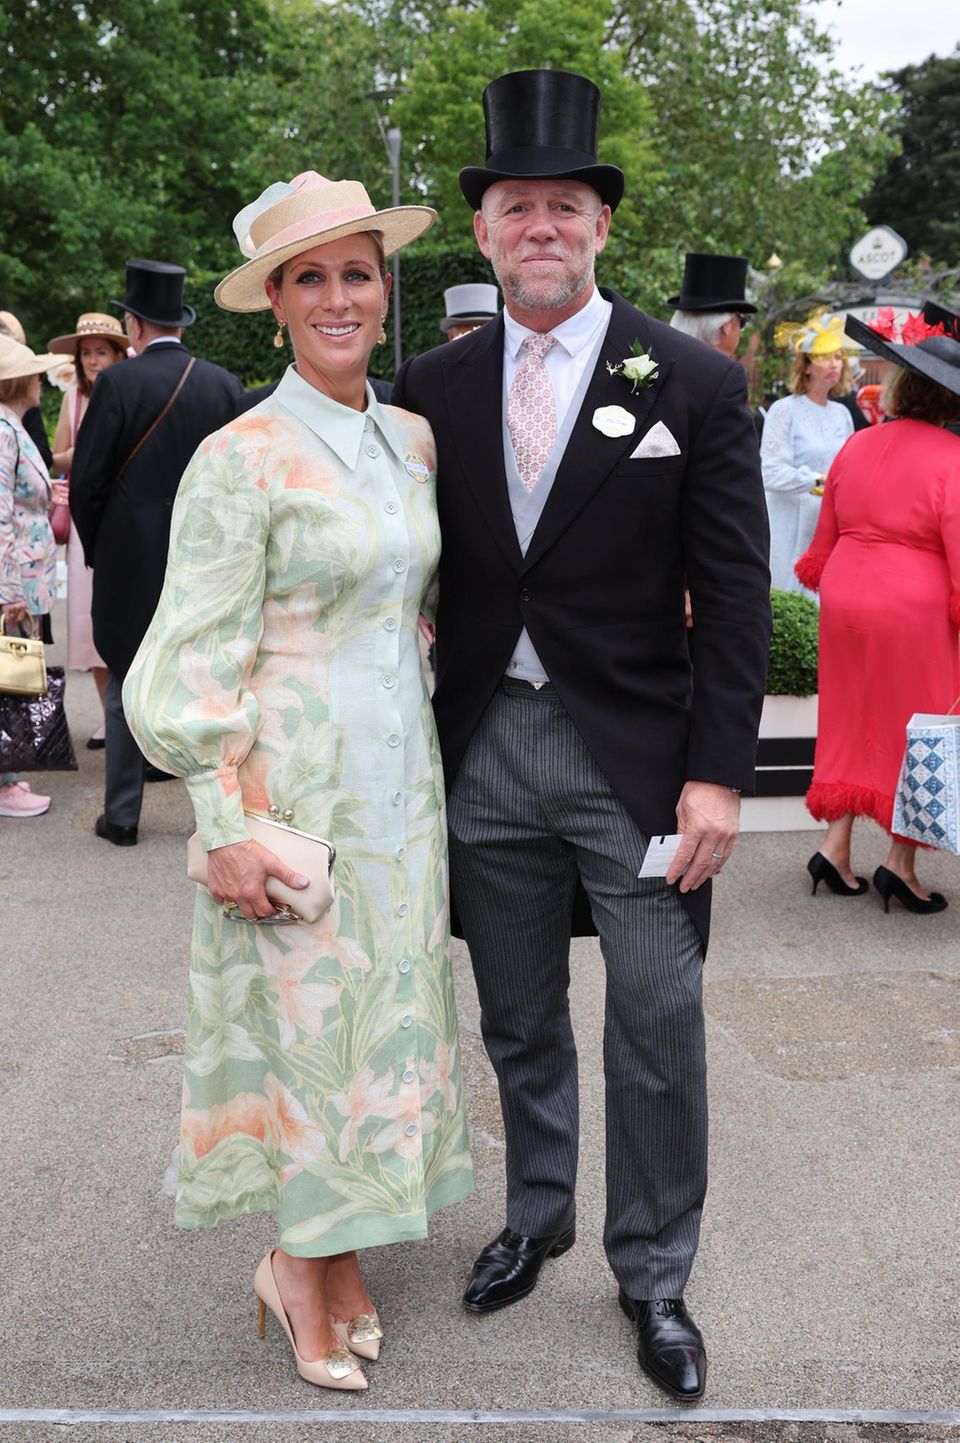 Als modische Einheit erscheinen Zara und Mike Tindall beim Royal Ascot 2023. Zara strahlt in einem eleganten Kleid mit floralem Muster von Leo Lin, das vor allem durch seine pastelligen Farben begeistert. Sommerliche Töne, auf die auch Mike Tindall mit seiner Krawatte setzt.